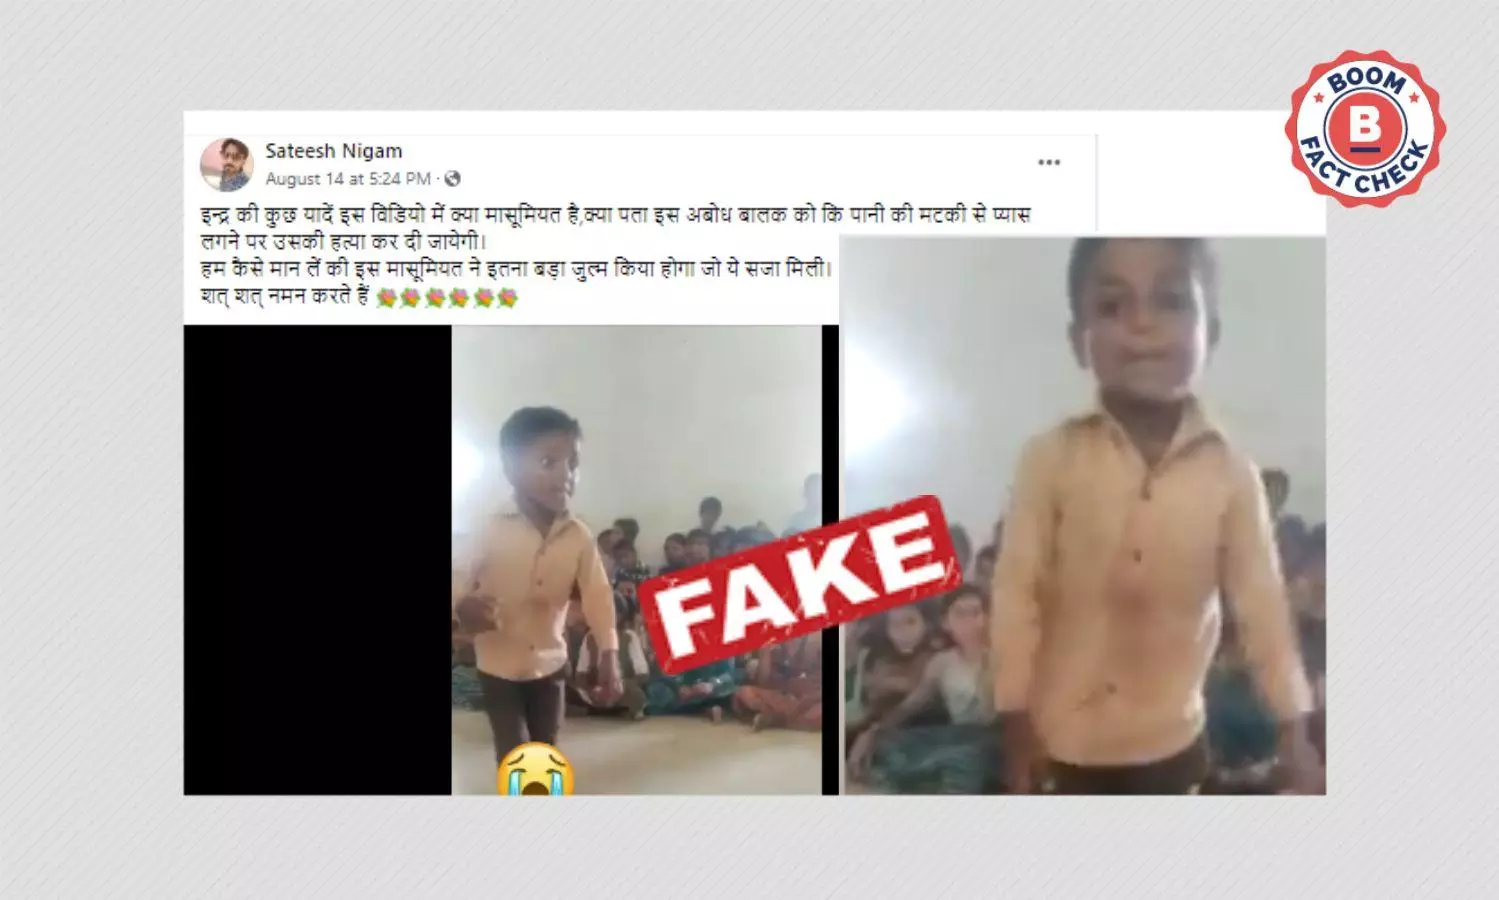 वीडियो में डांस करता दिख रहा बच्चा जालोर का इंद्र कुमार मेघवाल नहीं है